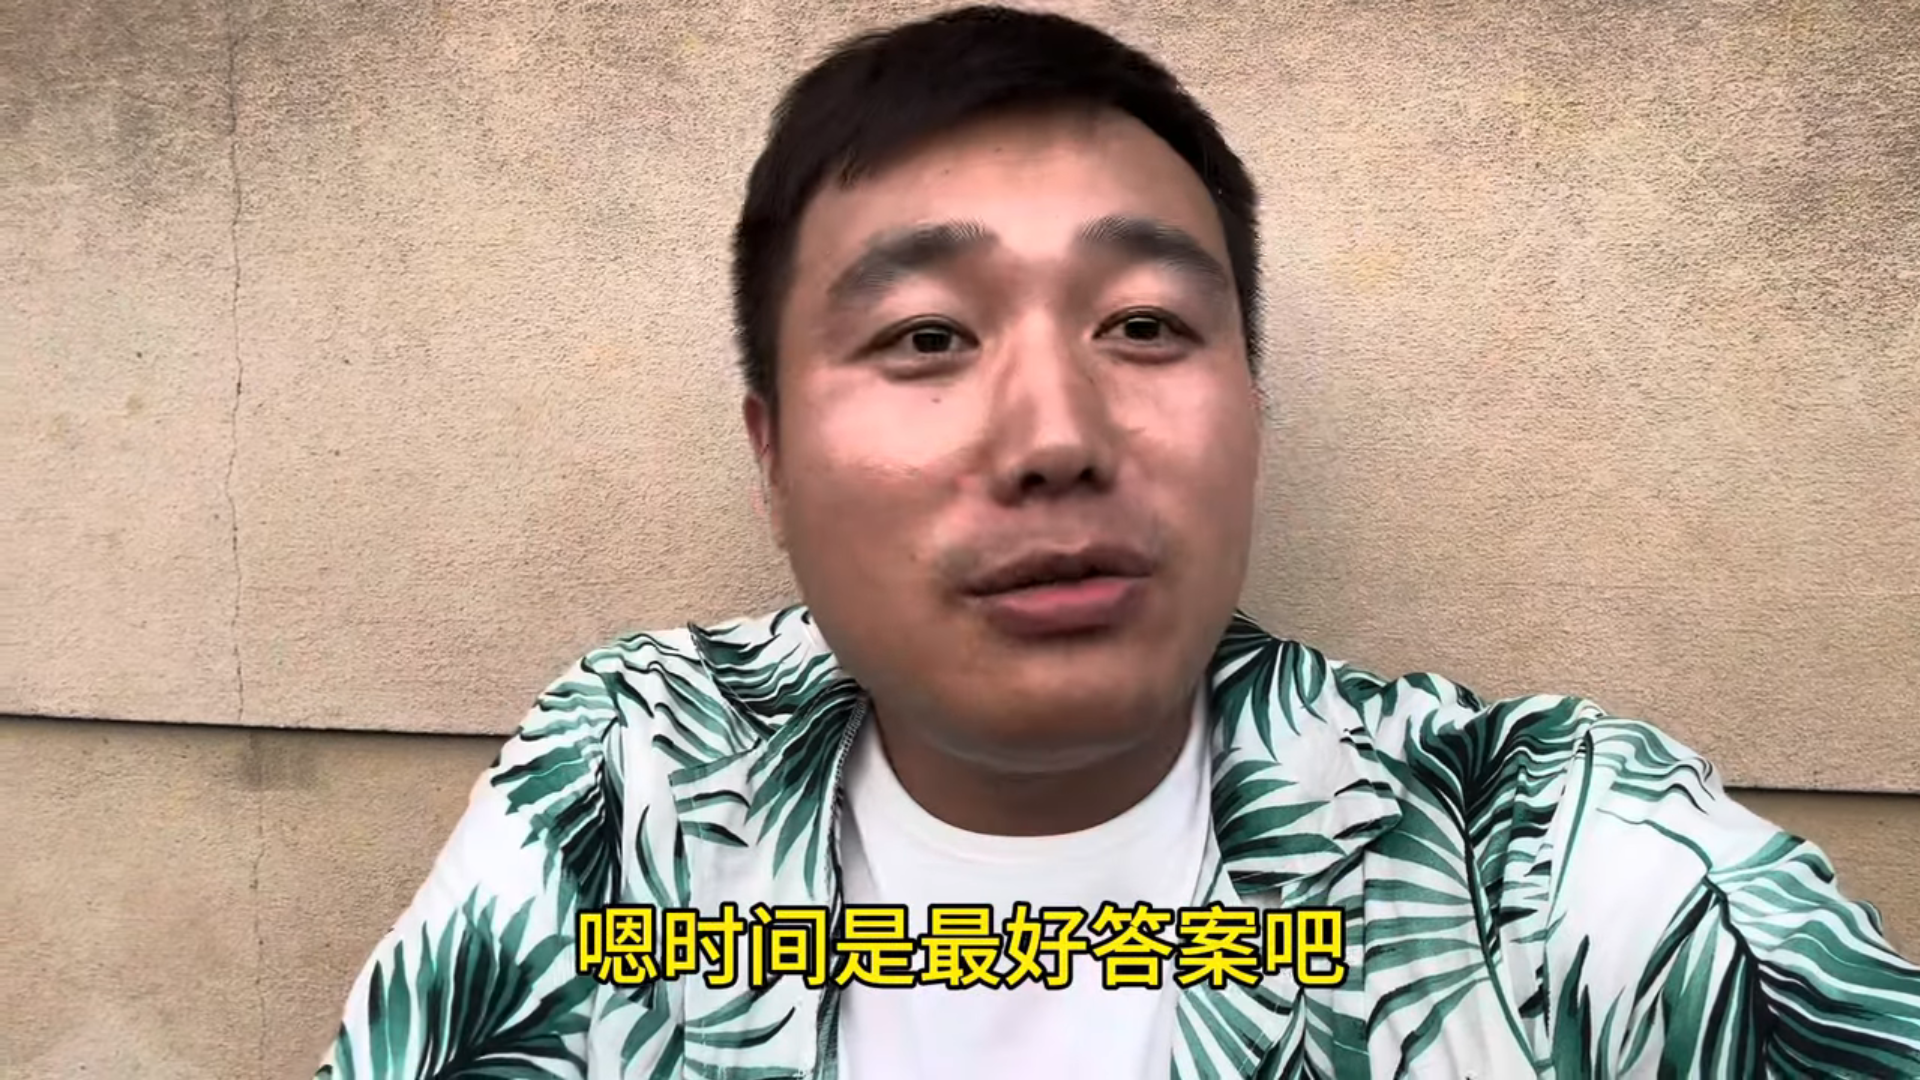 中國網紅Jake帶癌母來台求醫遭踢爆利用台灣人善心